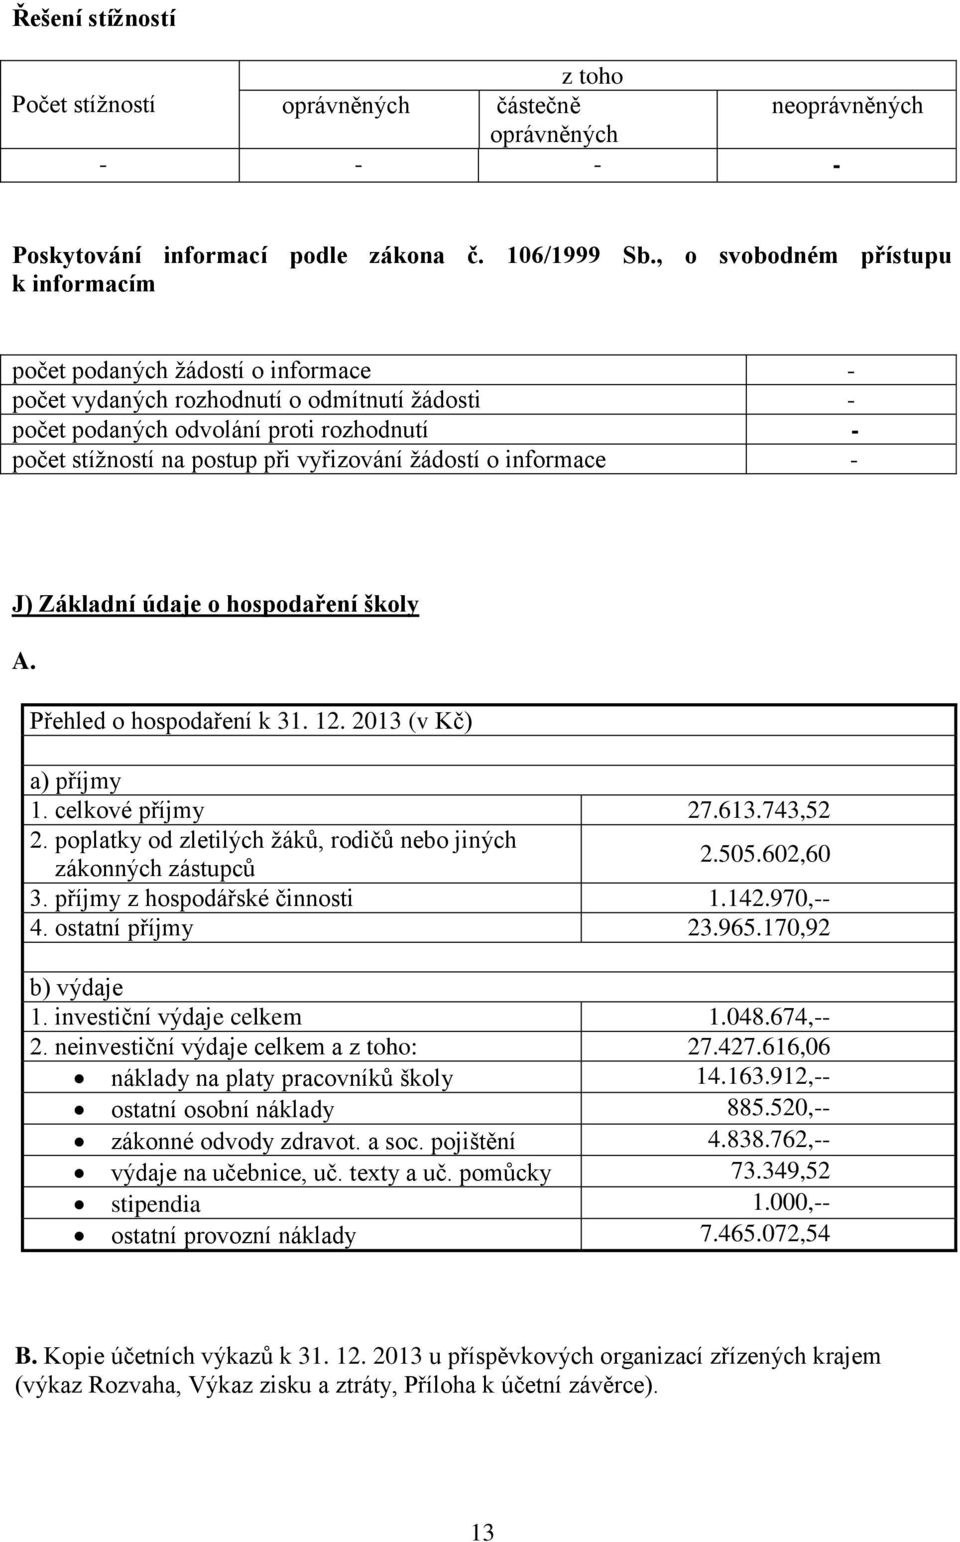 vyřizování žádostí o informace - J) Základní údaje o hospodaření školy A. Přehled o hospodaření k 31. 12. 2013 (v Kč) a) příjmy 1. celkové příjmy 27.613.743,52 2.